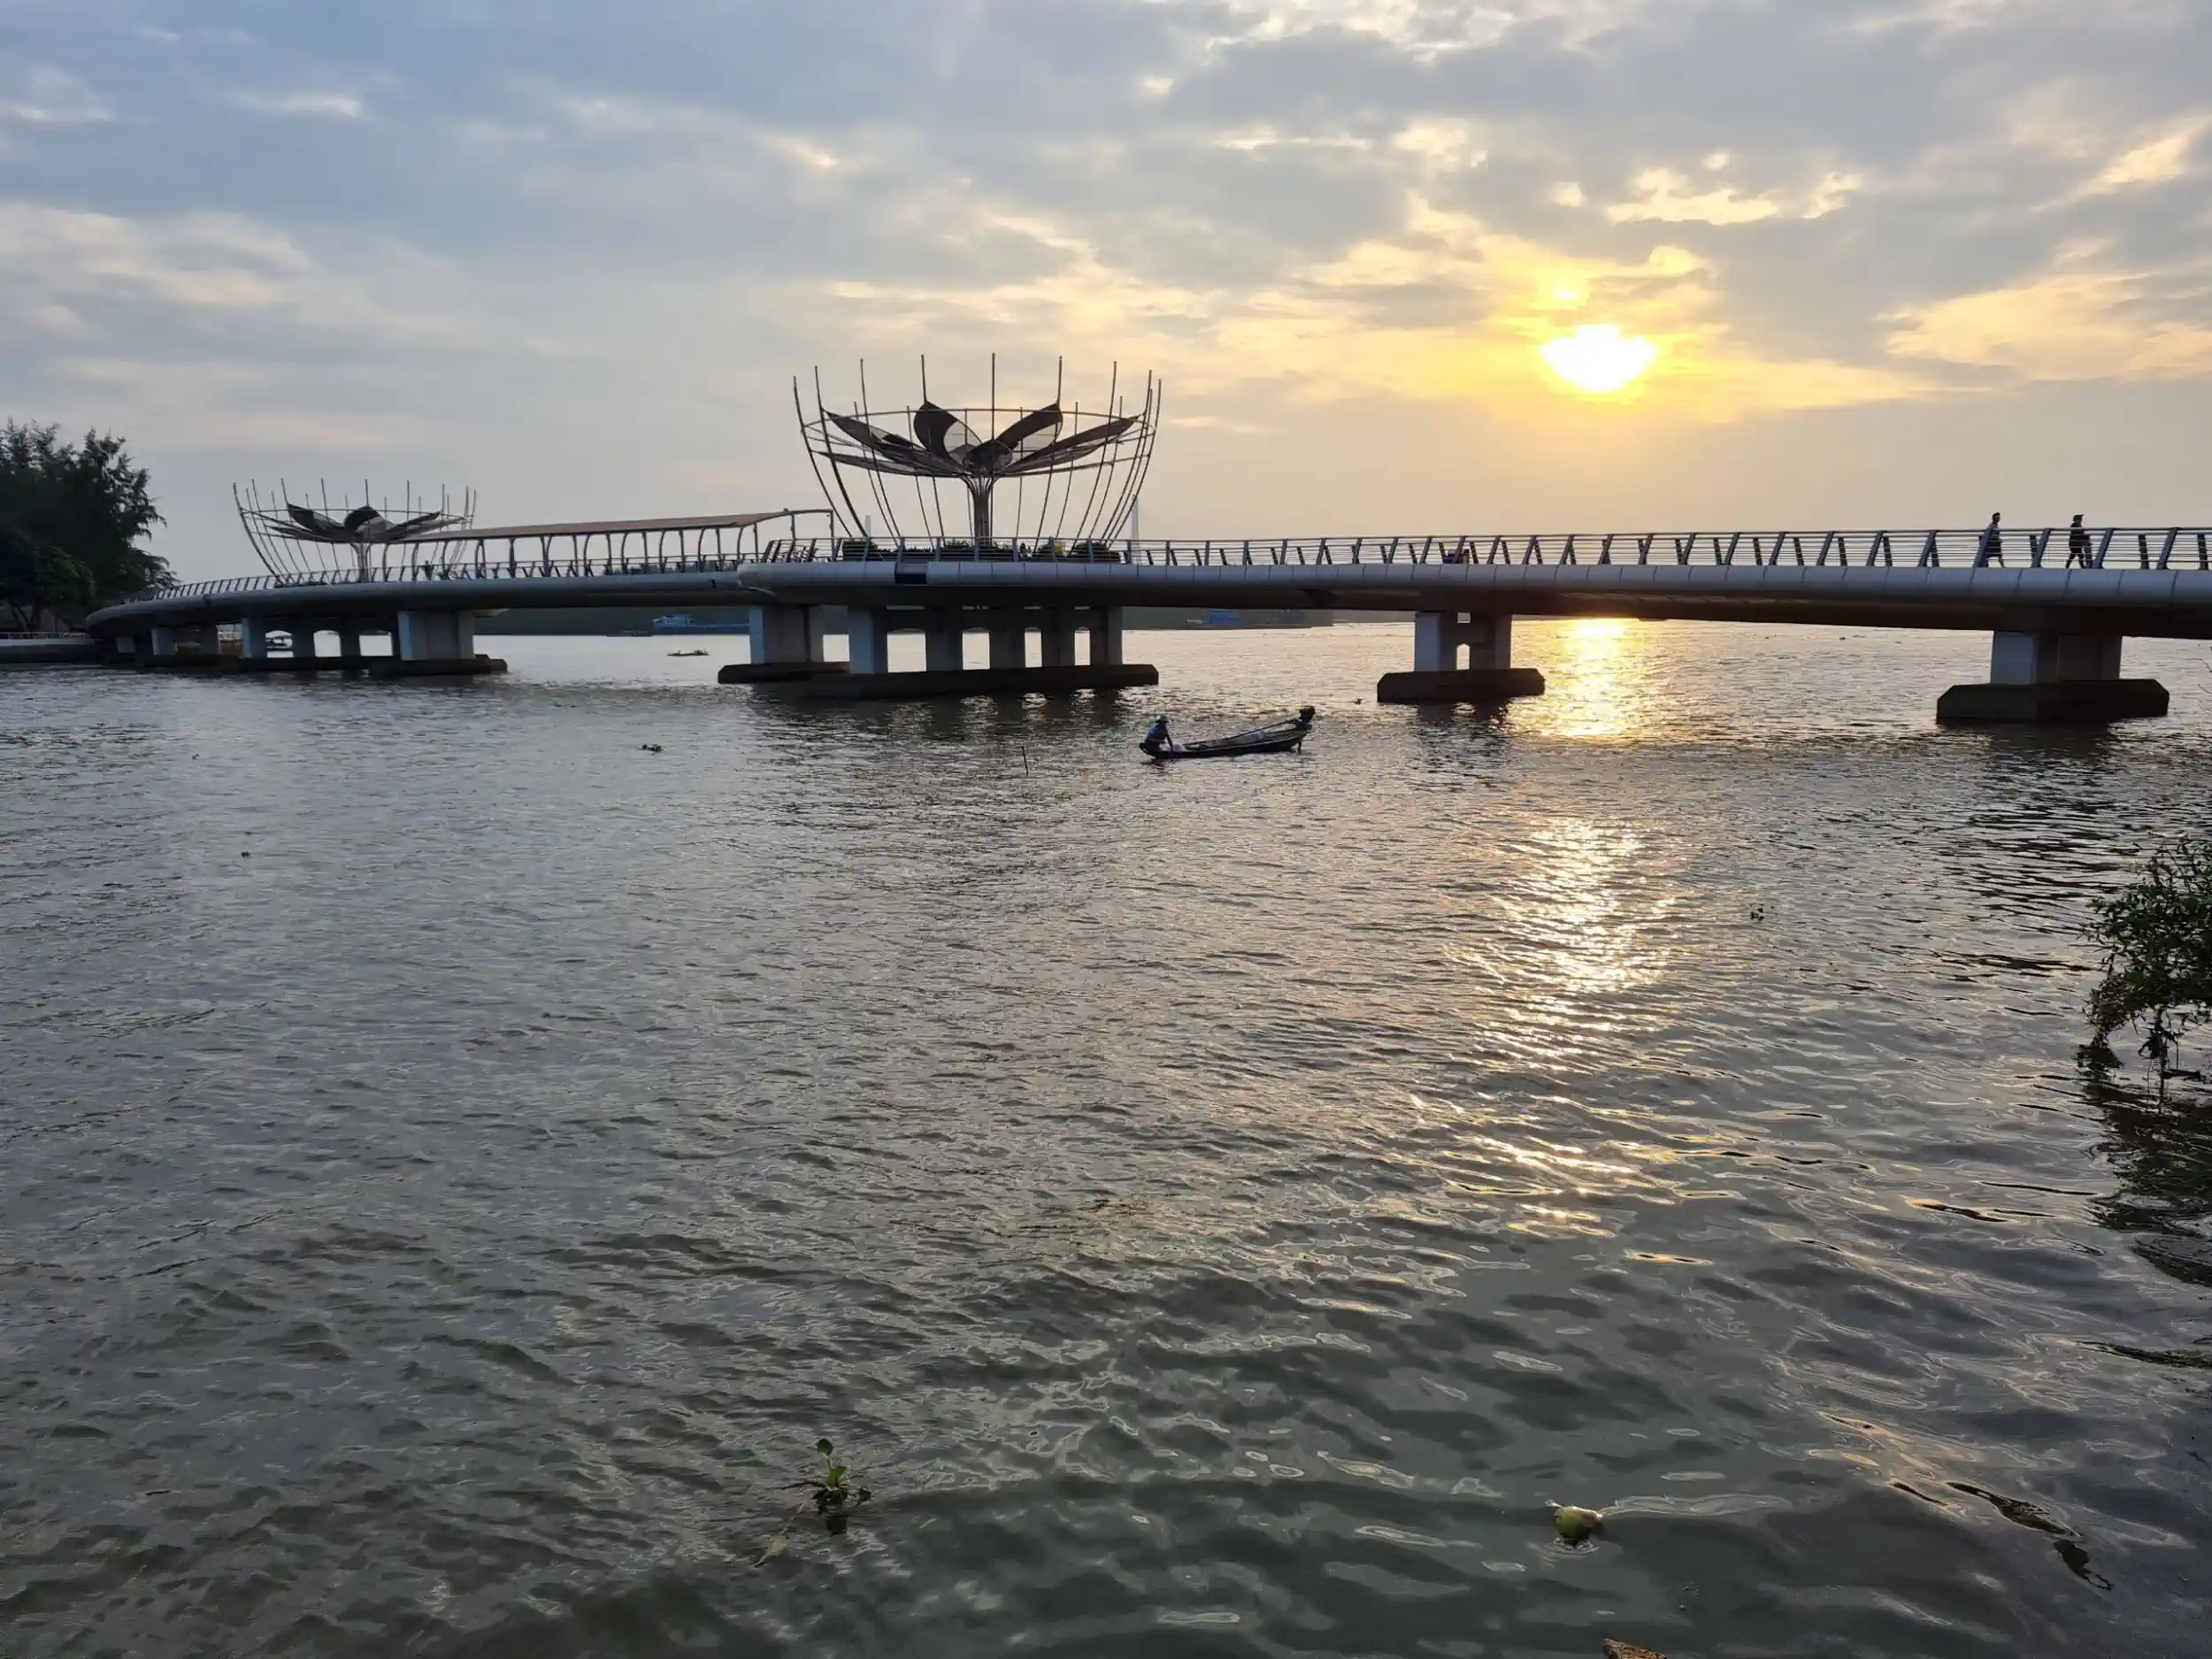 Cầu đi bộ và đoạn sông từ cầu đi bộ đến cầu Ninh Kiều (quận Ninh Kiều) là một trong những địa điểm diễn ra Ngày hội Du lịch - Đêm hoa đăng Ninh Kiều, Cần Thơ.